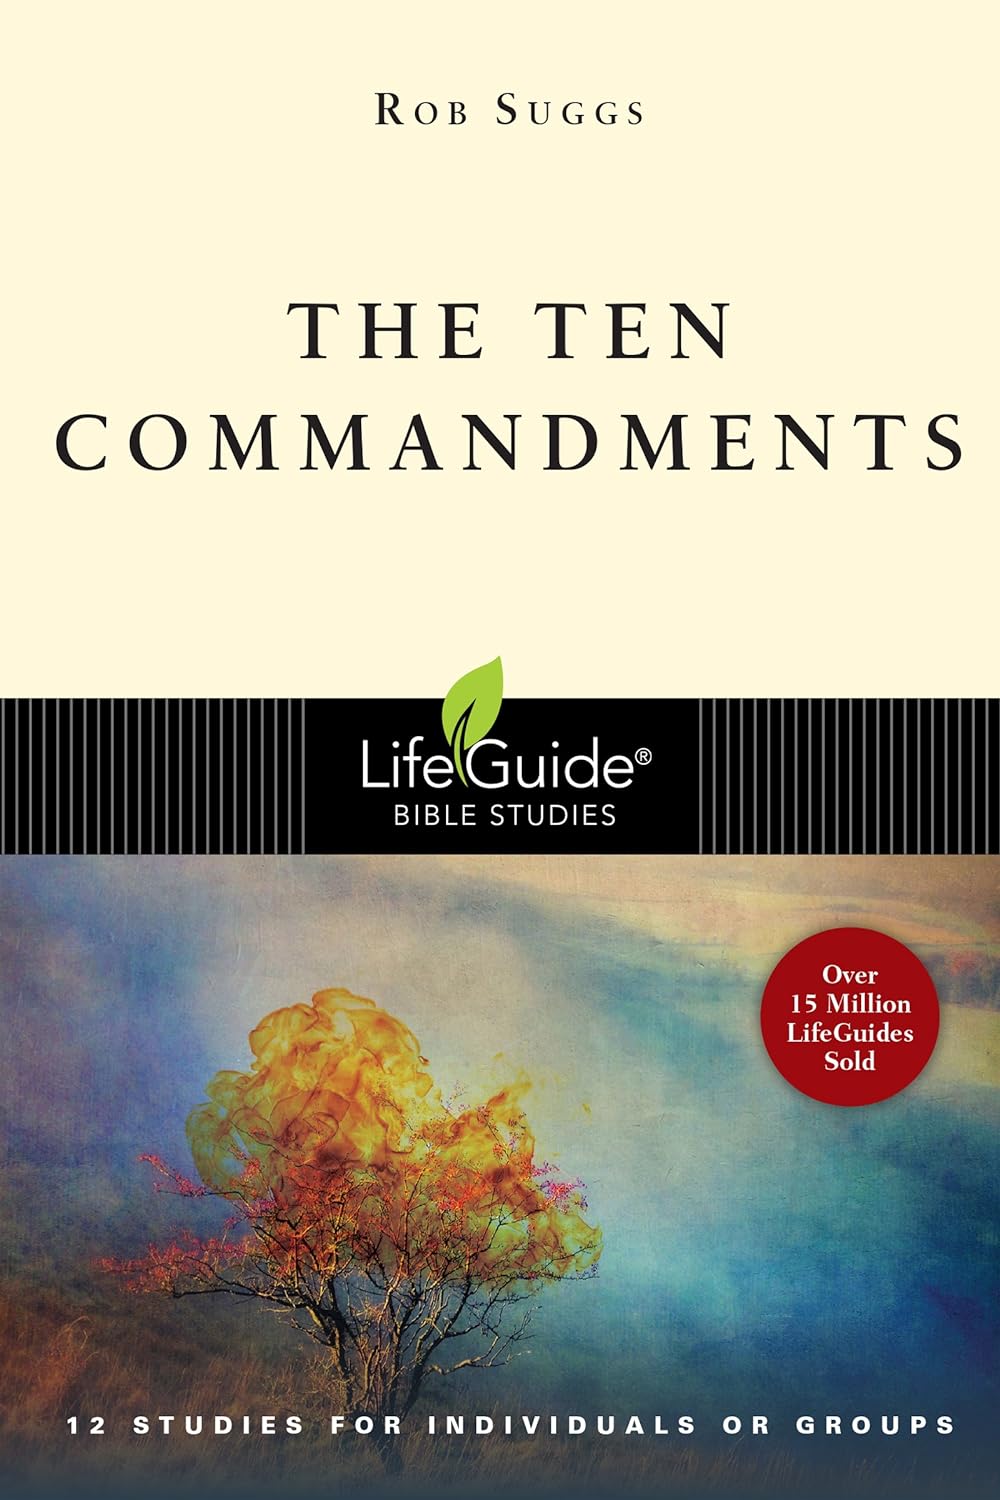 Lifeguide Bible Study - The Ten Commandments